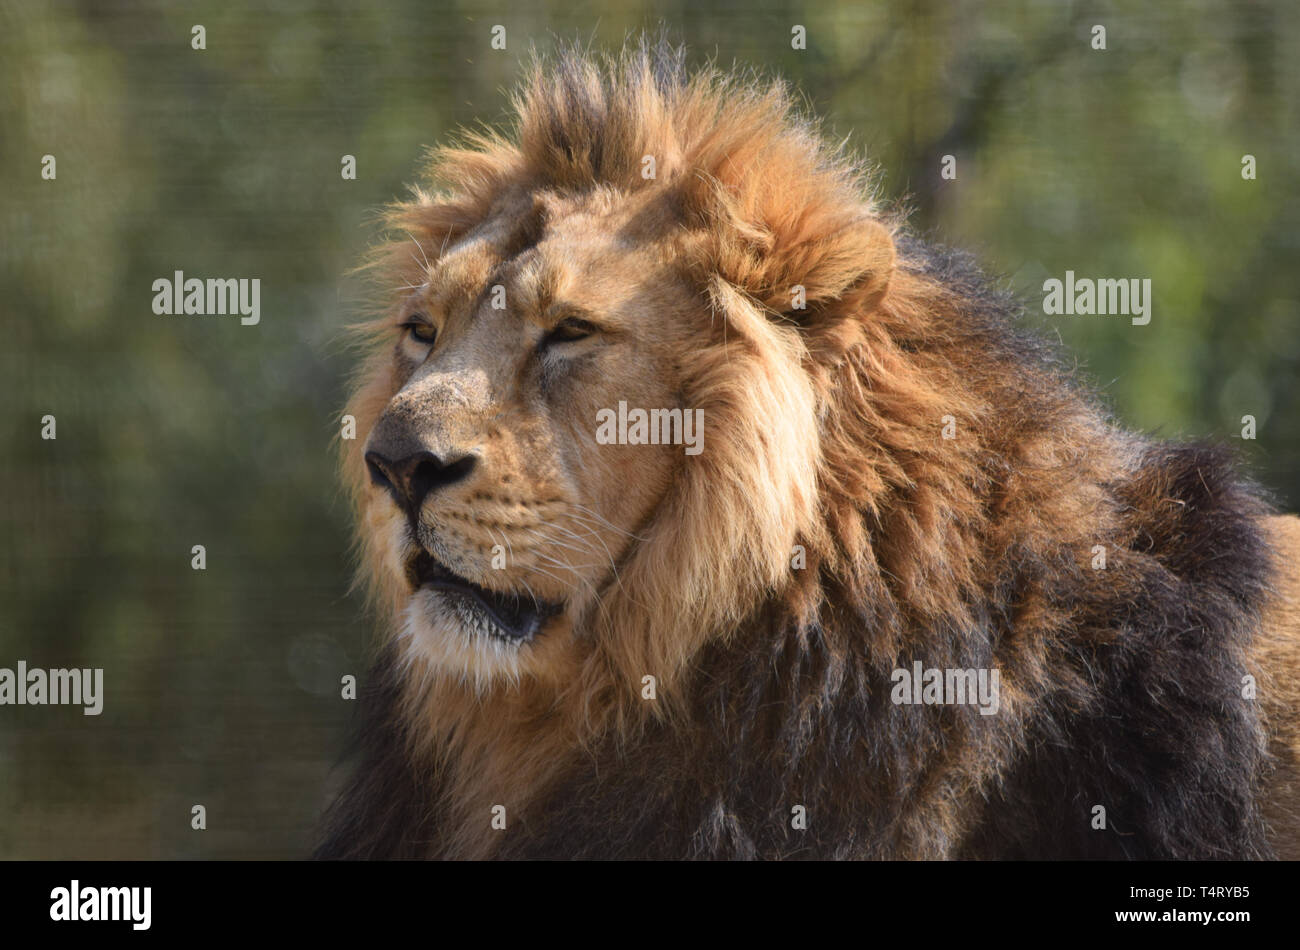 Male lion close up portrait Stock Photo